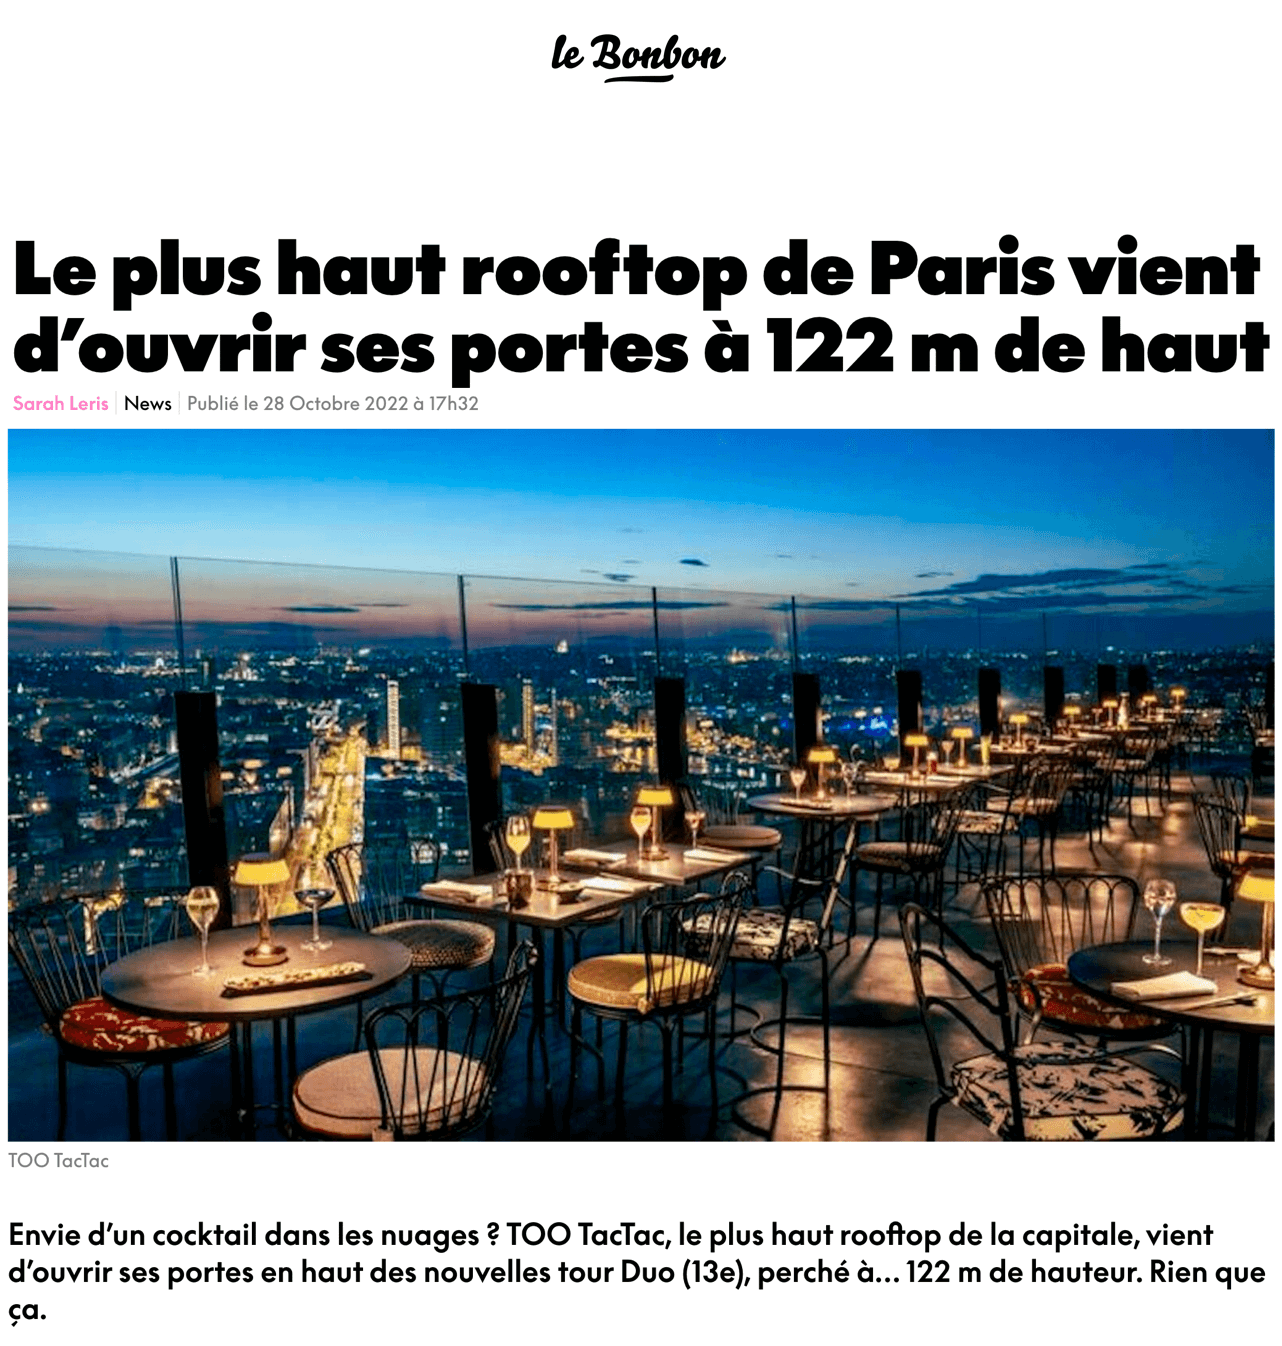 Le plus haut rooftop de Paris vient d’ouvrir ses portes à 122 m de haut